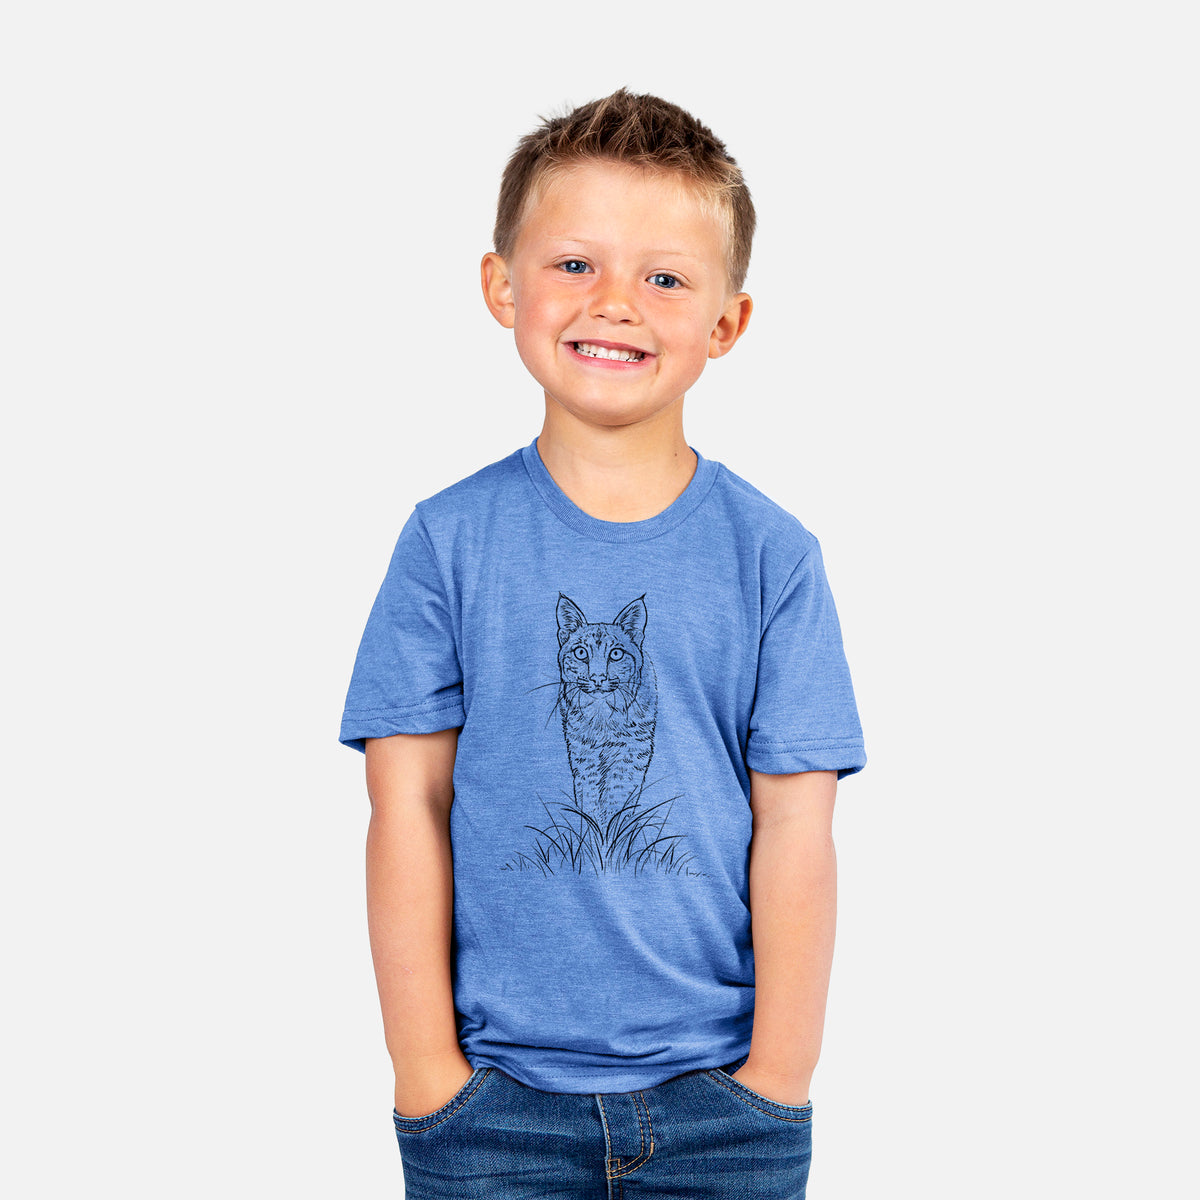 Bobcat - Lynx rufus - Kids Shirt